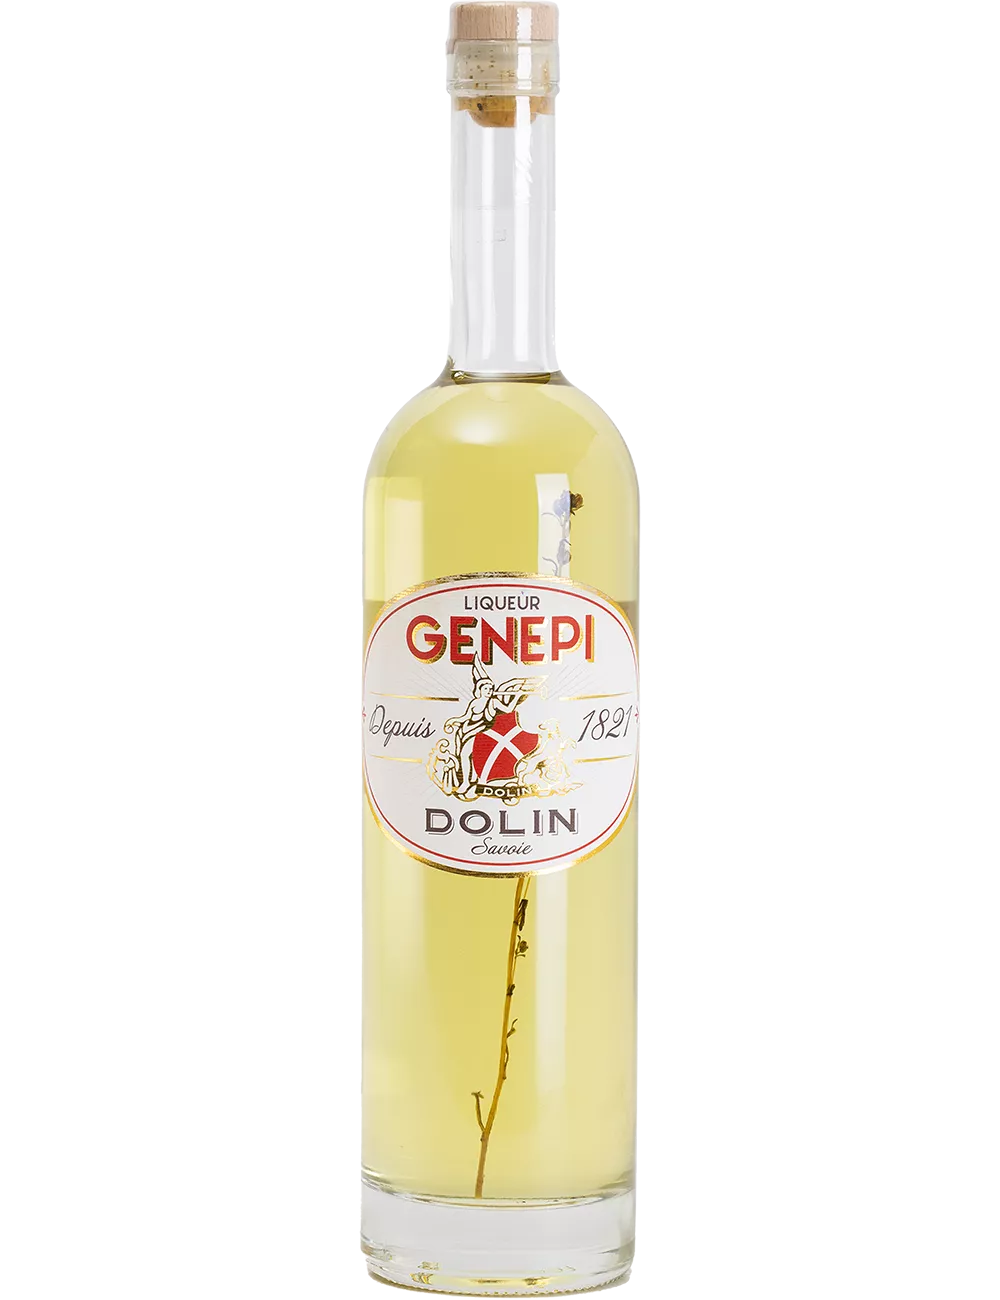 Genepi - Dolin - Liqueur